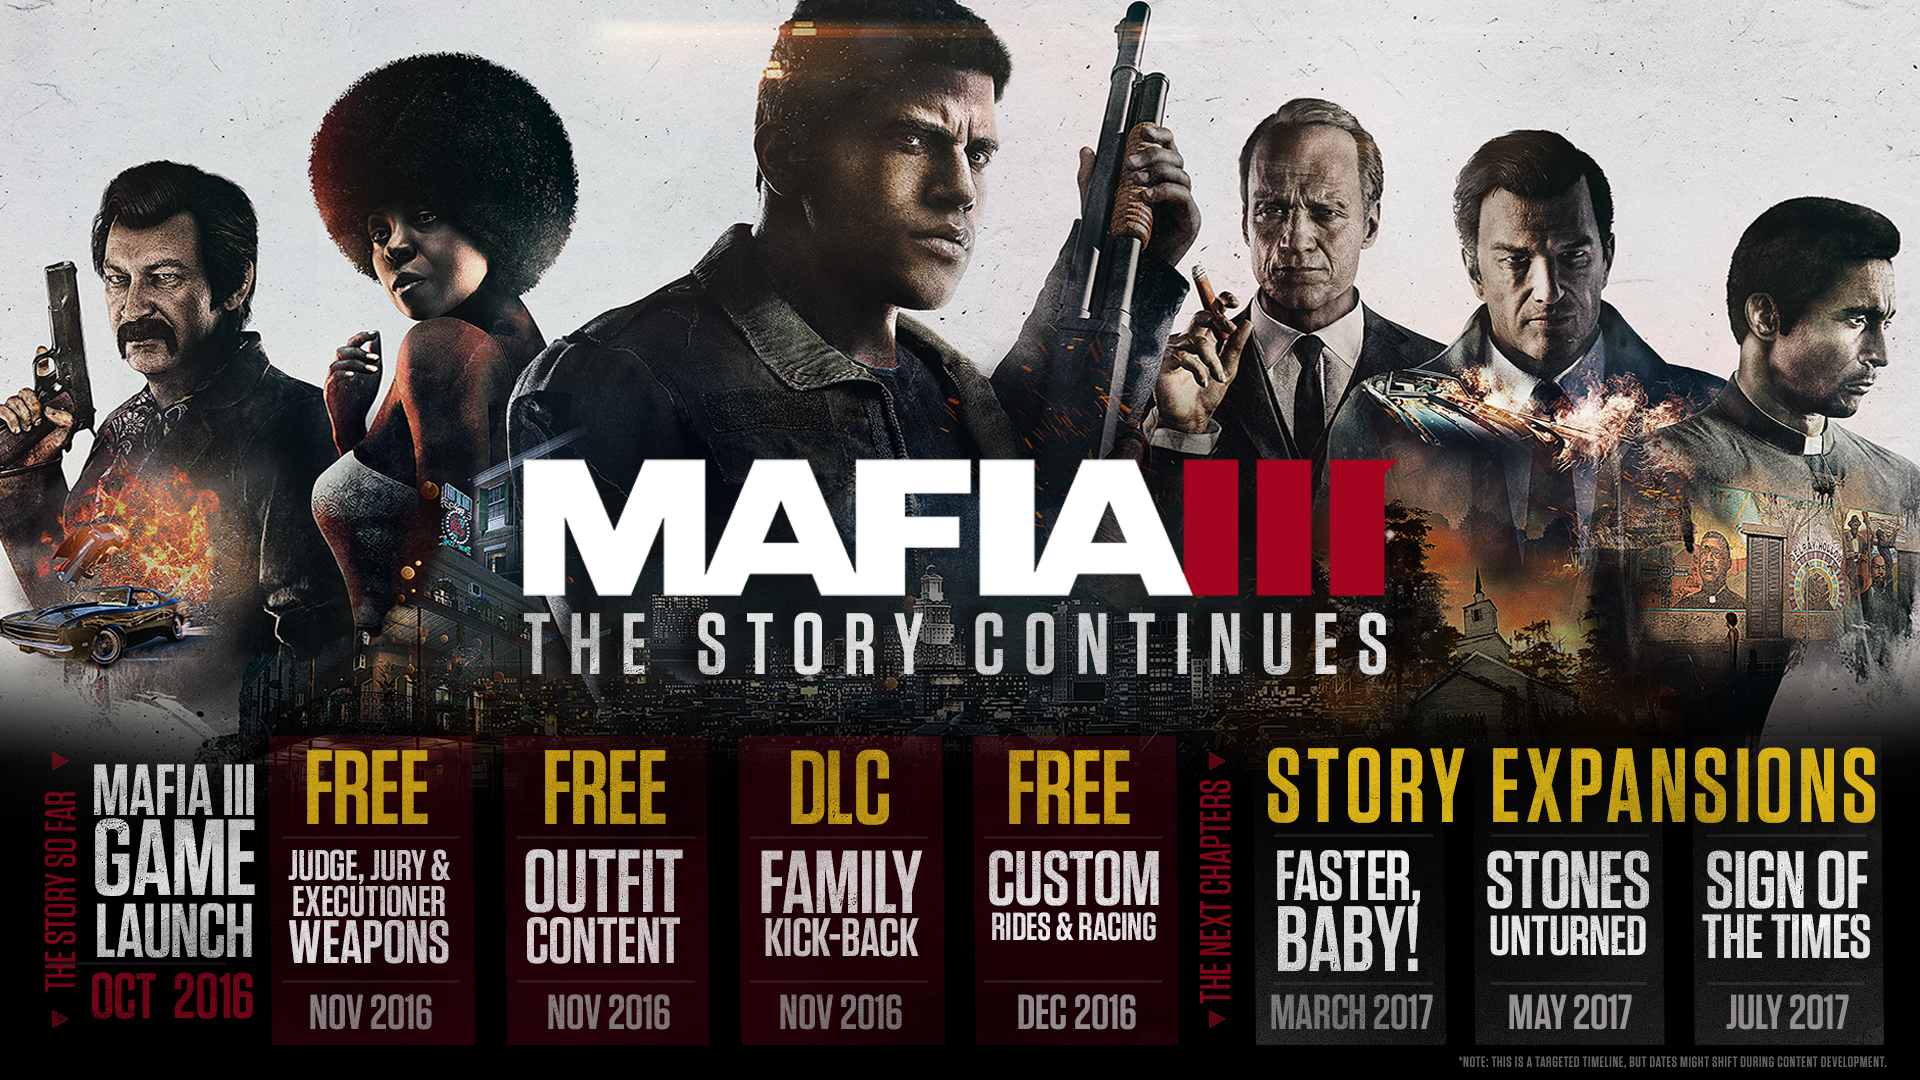 Downloadable Content in Mafia III | Mafia Wiki | Fandom